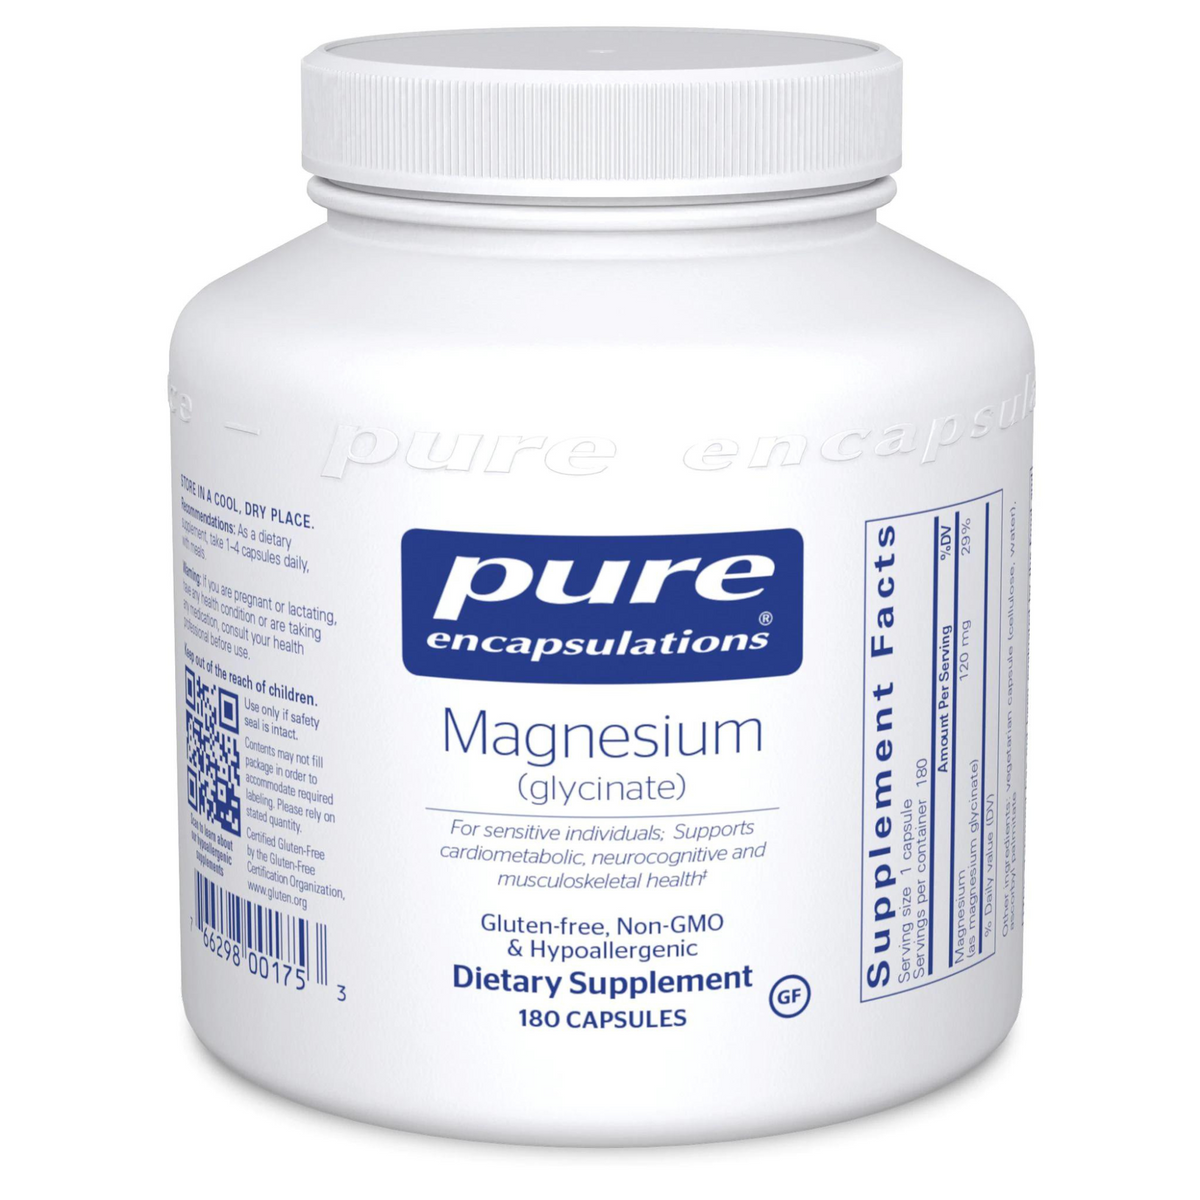 Primary Image of Magnesium (glycinate) capsules (180 count)